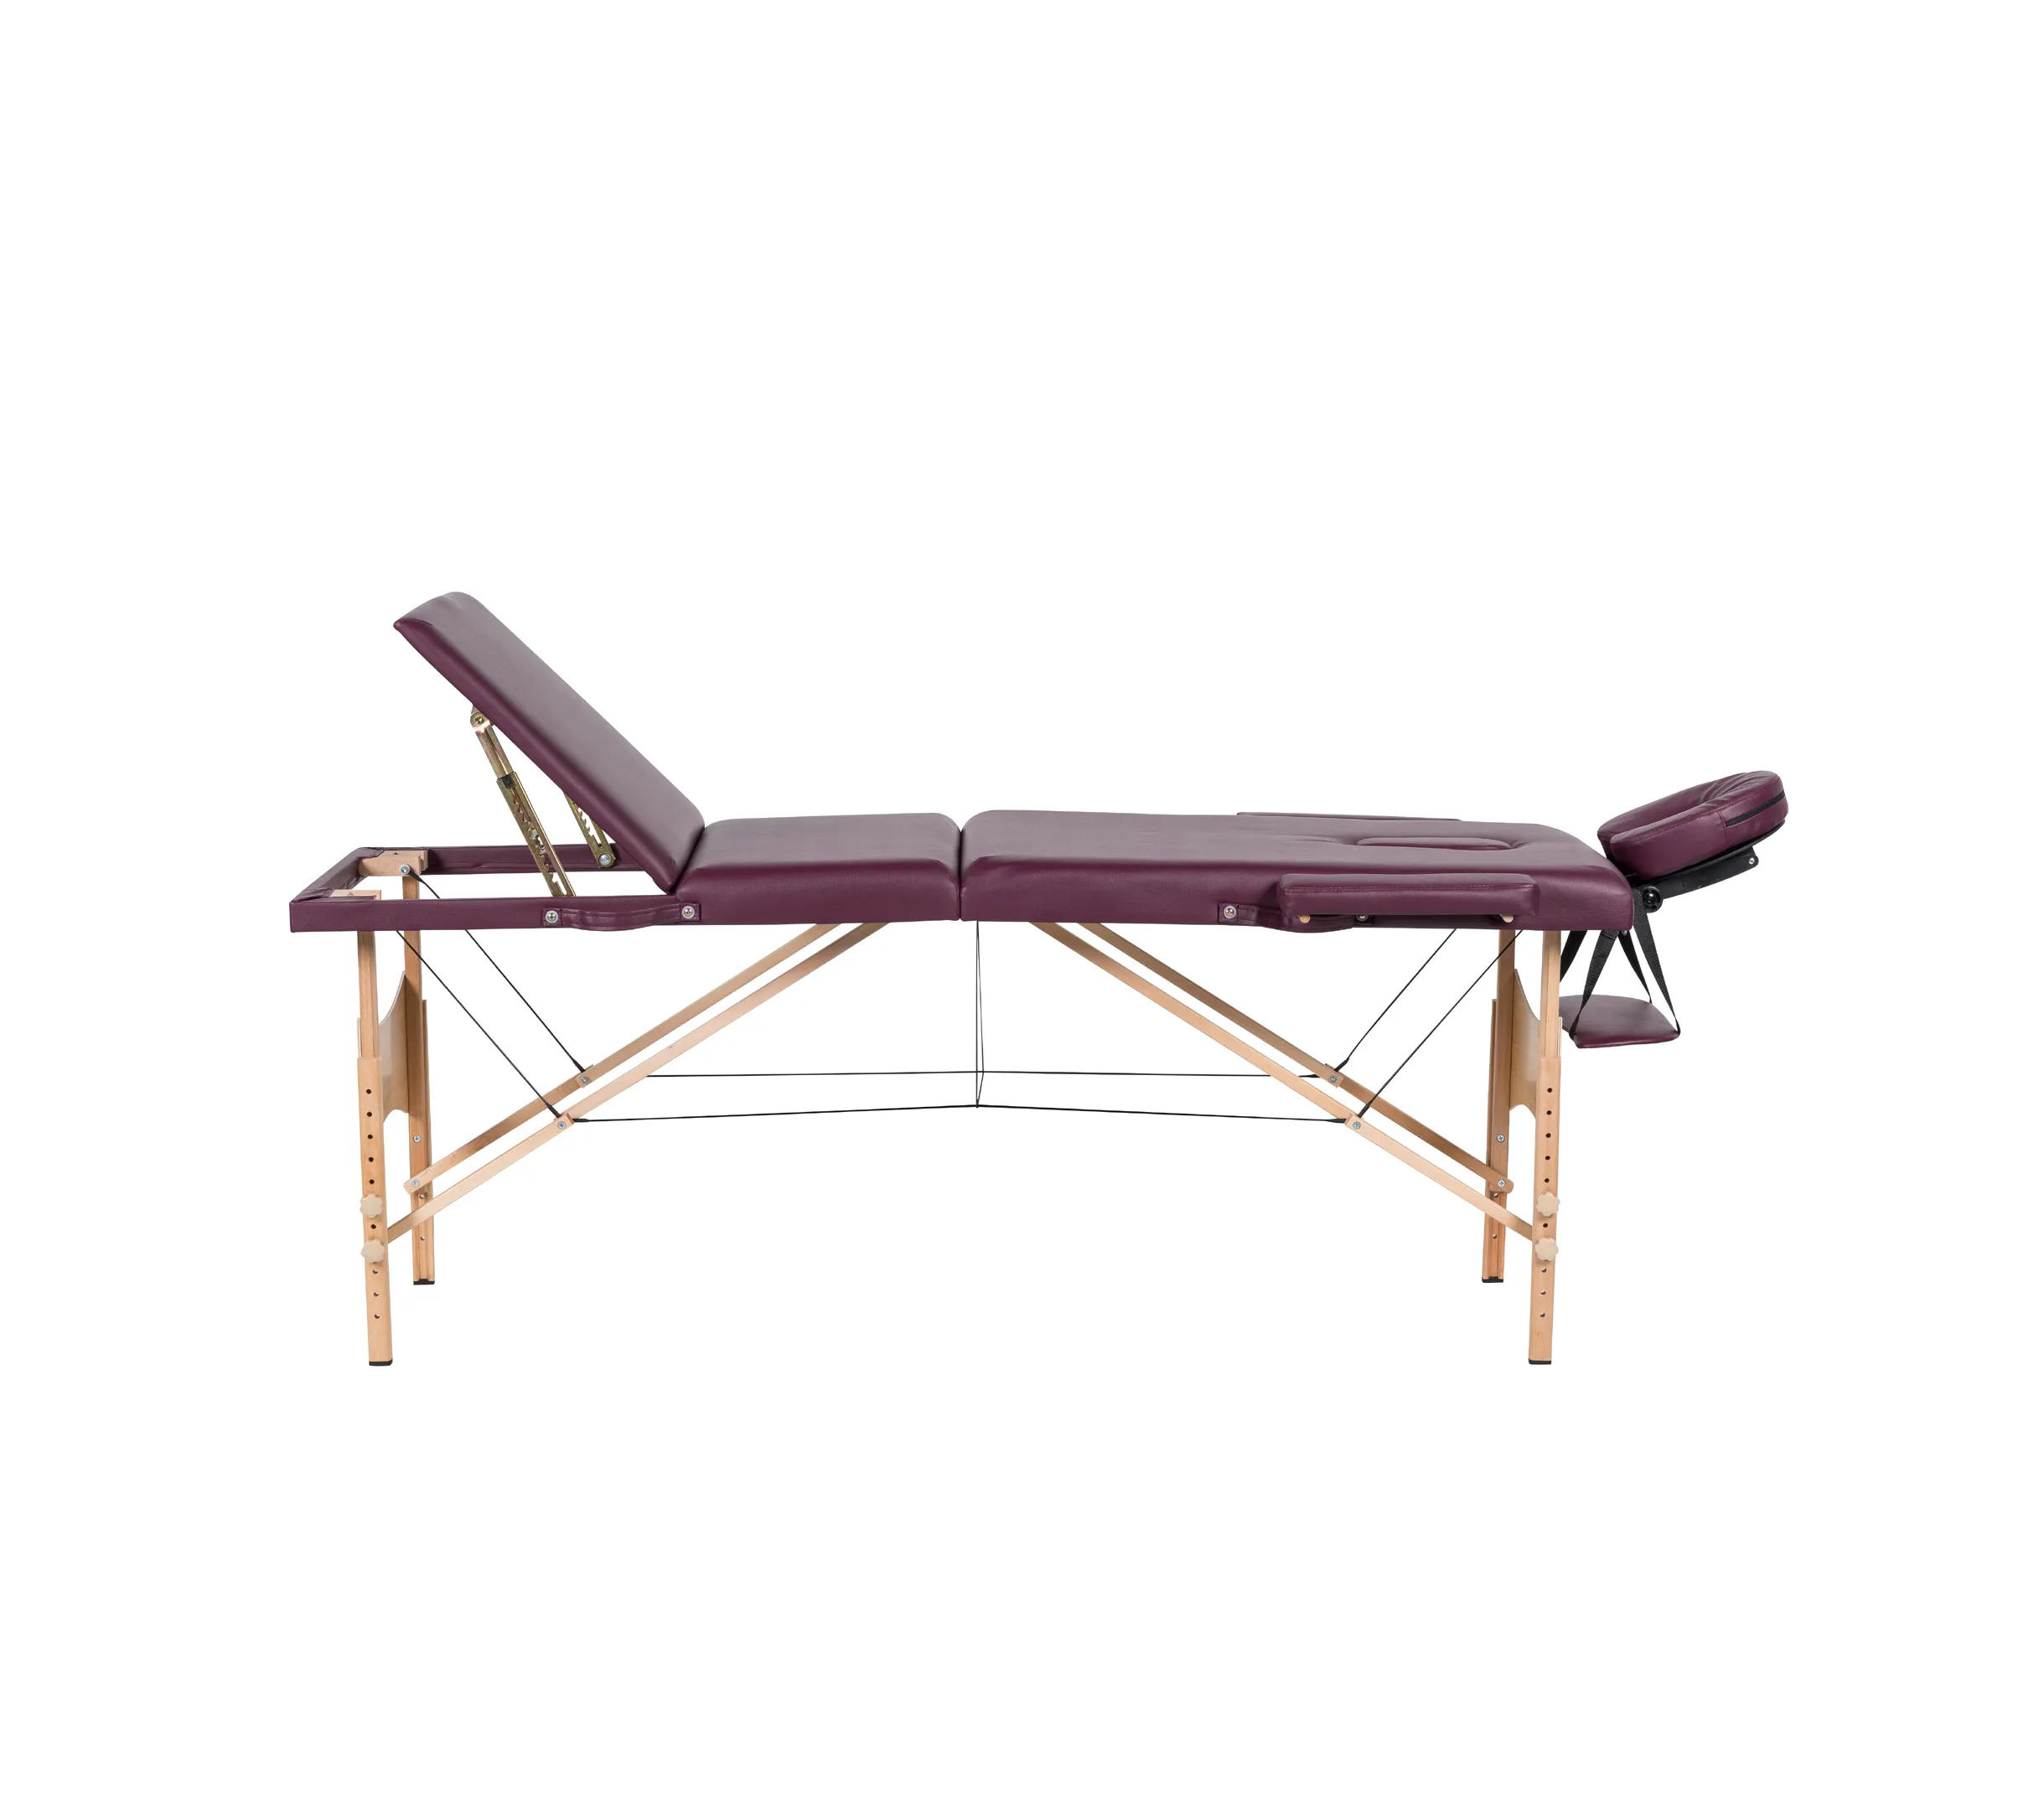 Camilla de masaje superventas, cama de masaje corporal para Spa, cama de masaje facial plegable de 3 secciones